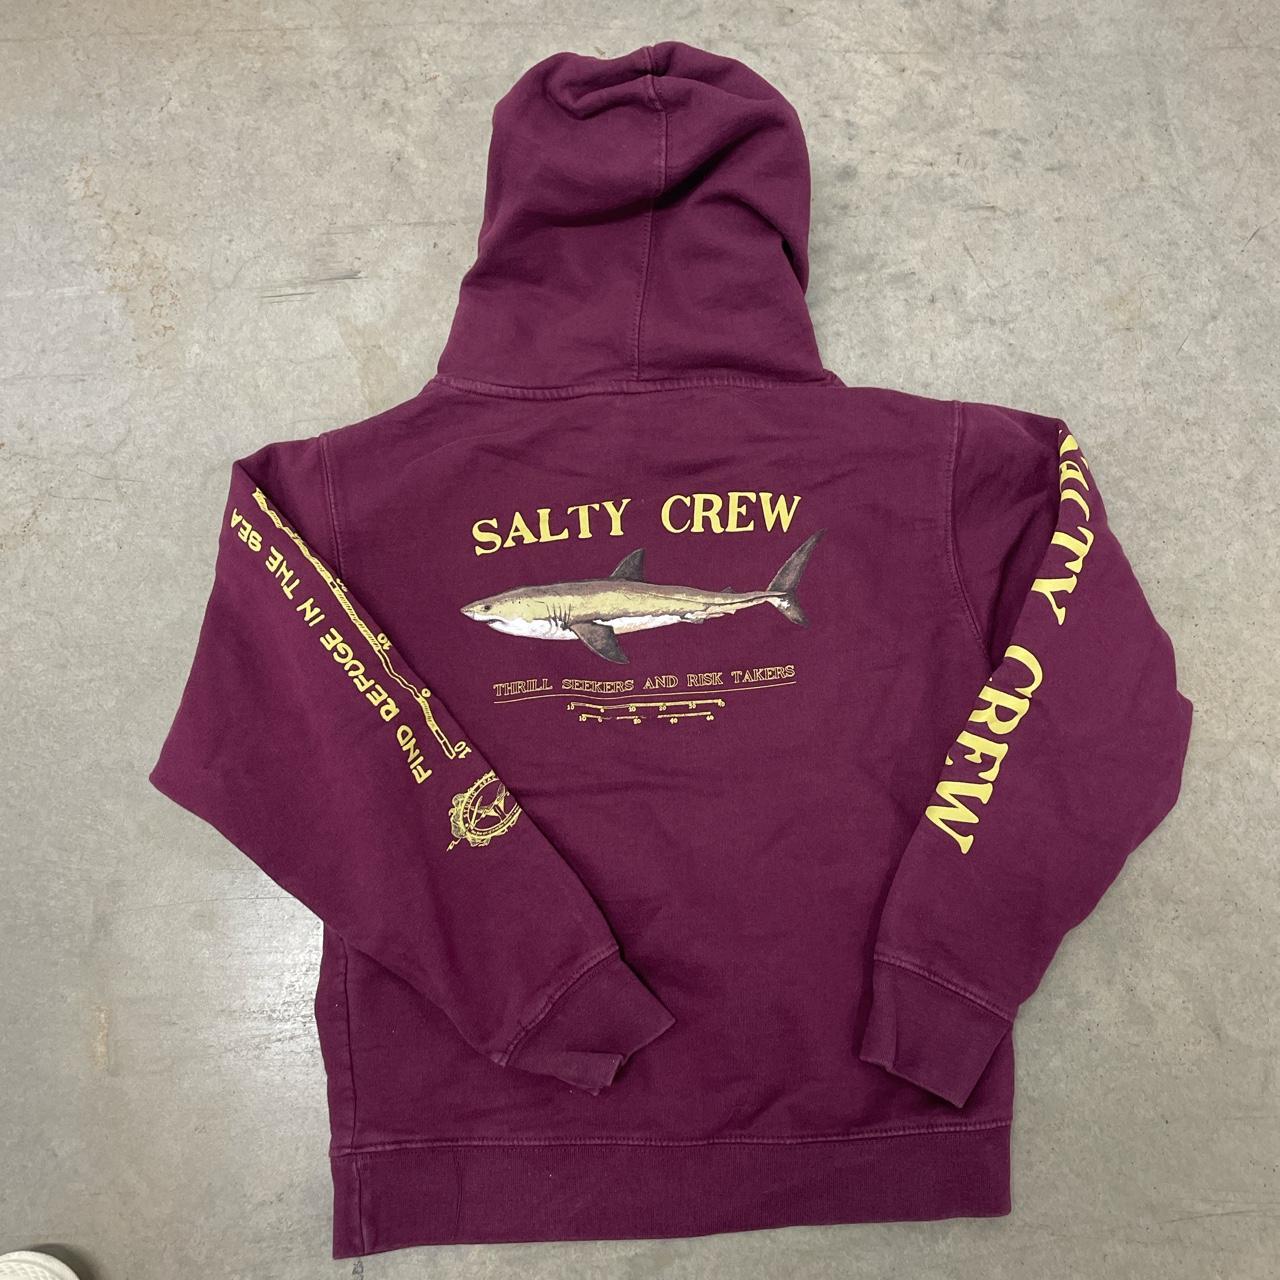 Salty crew hoodie for kids - Depop